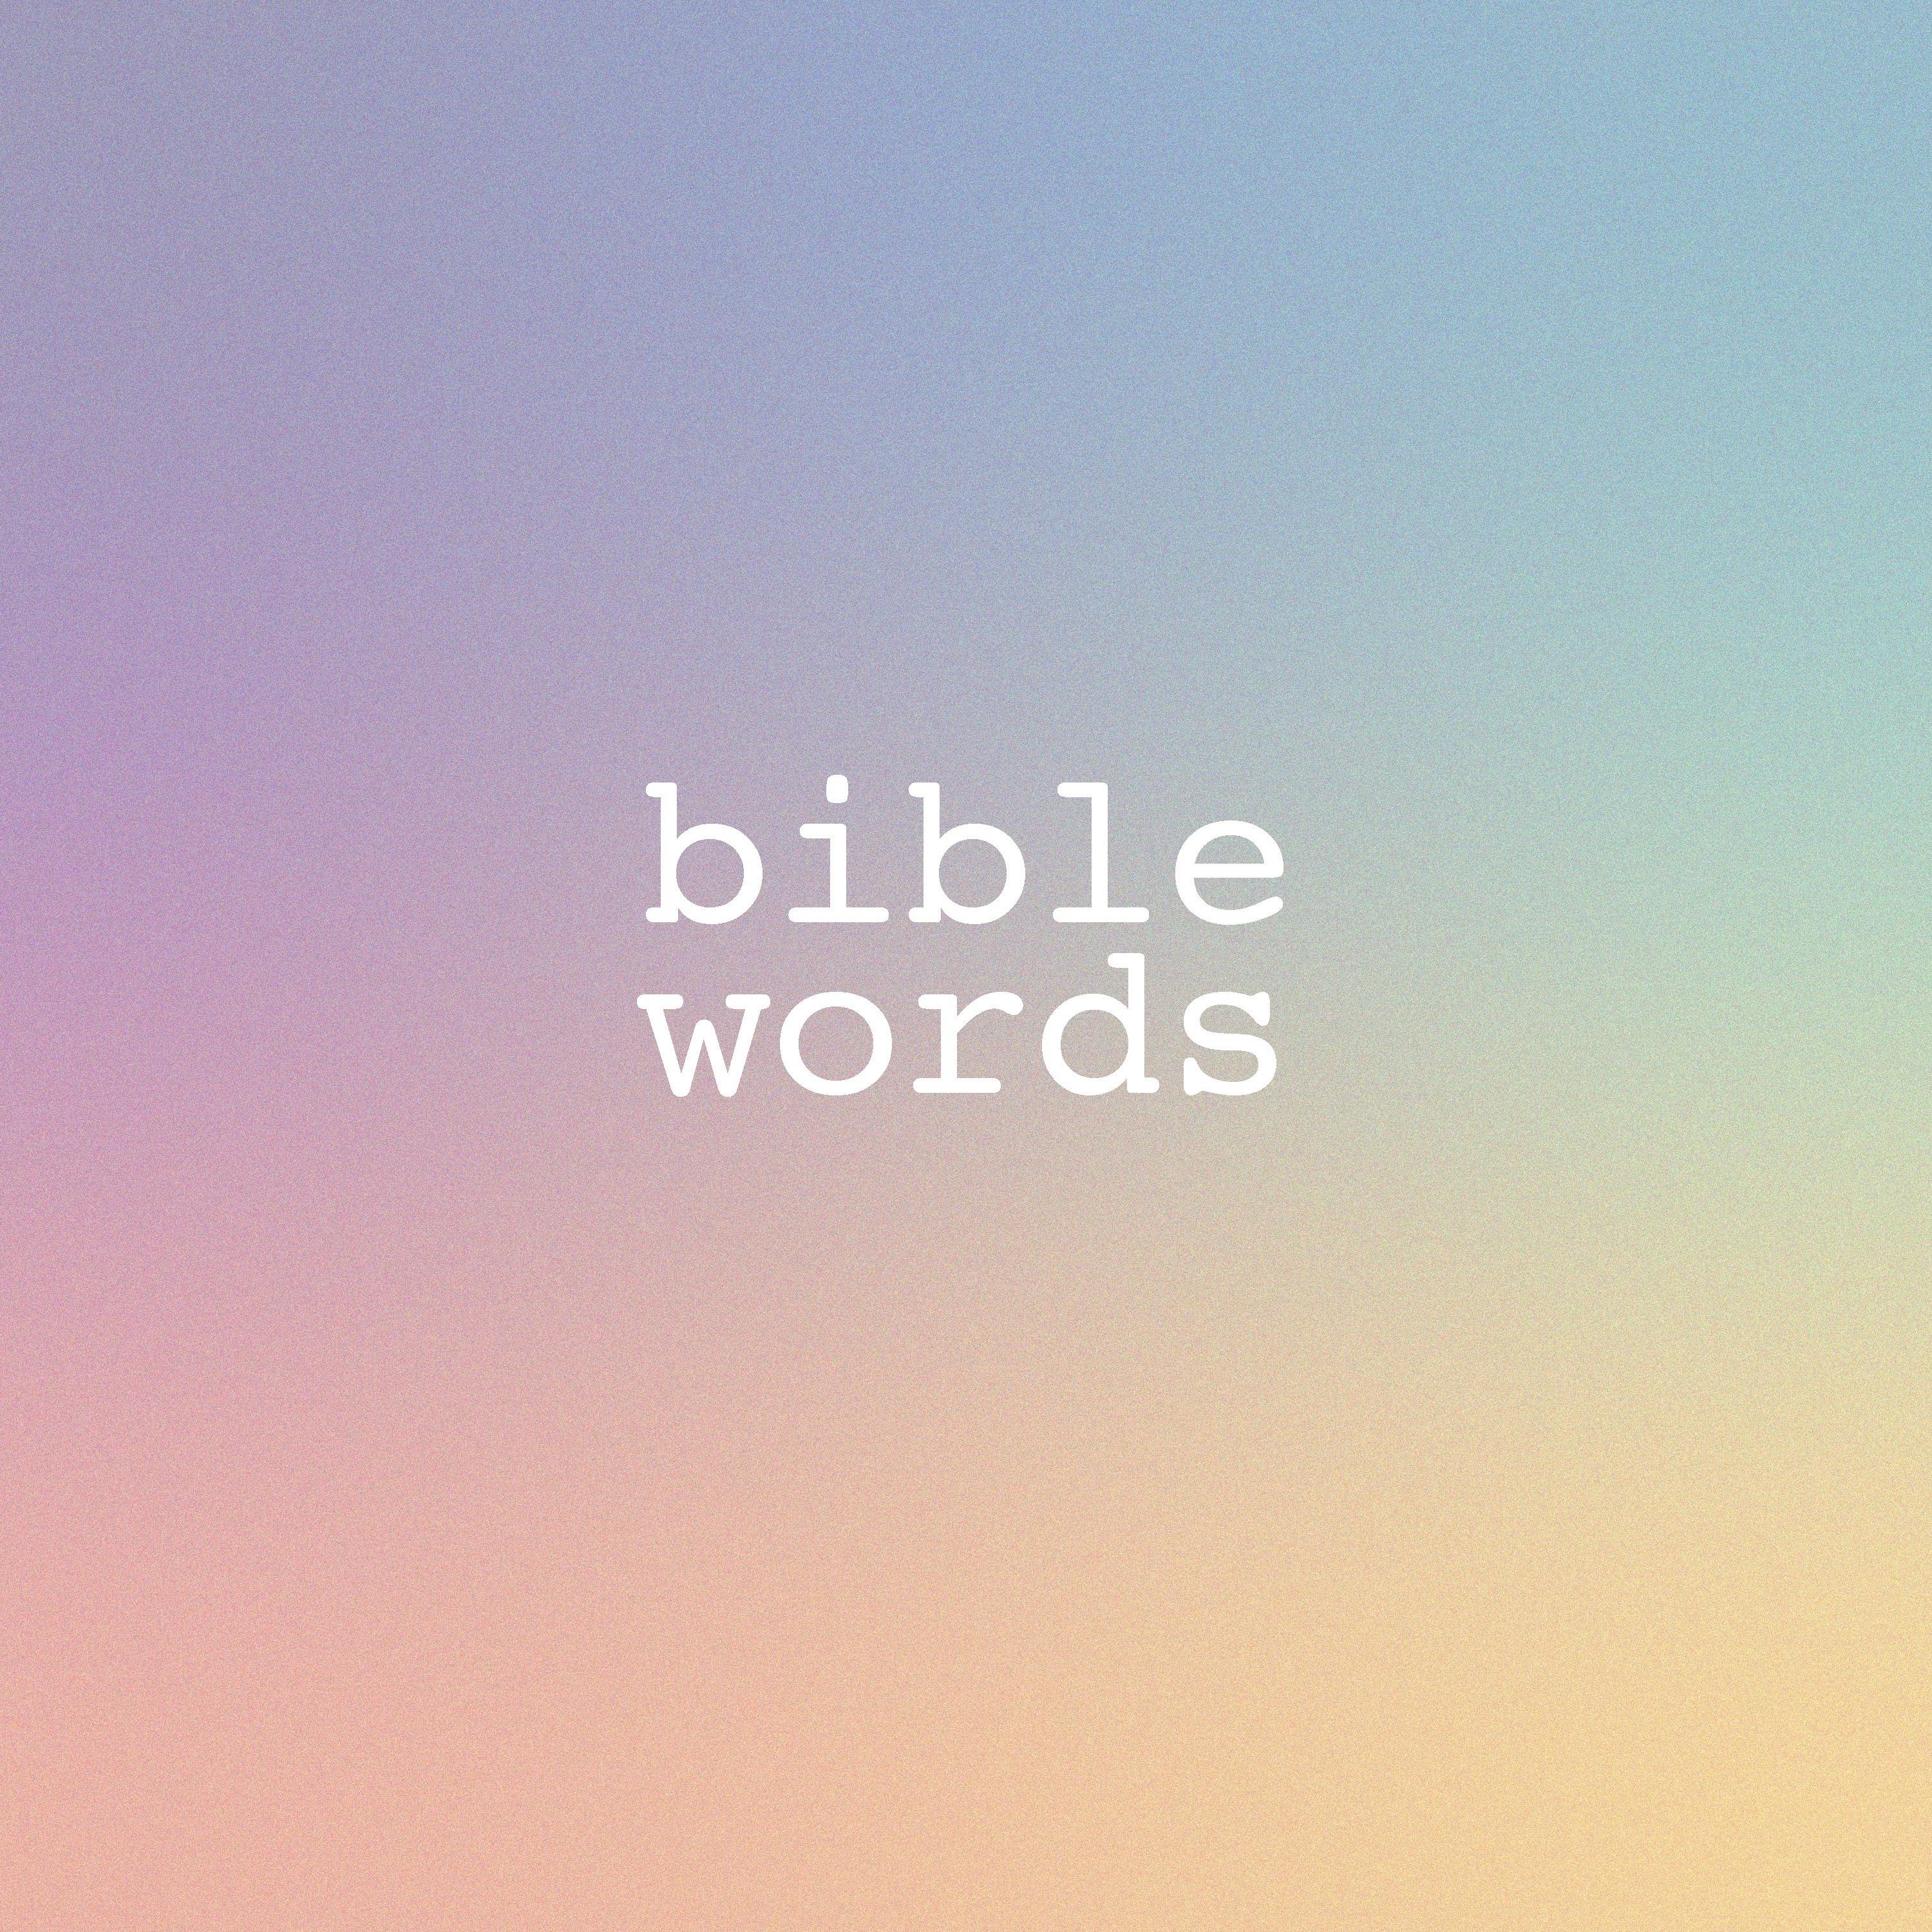 bible words